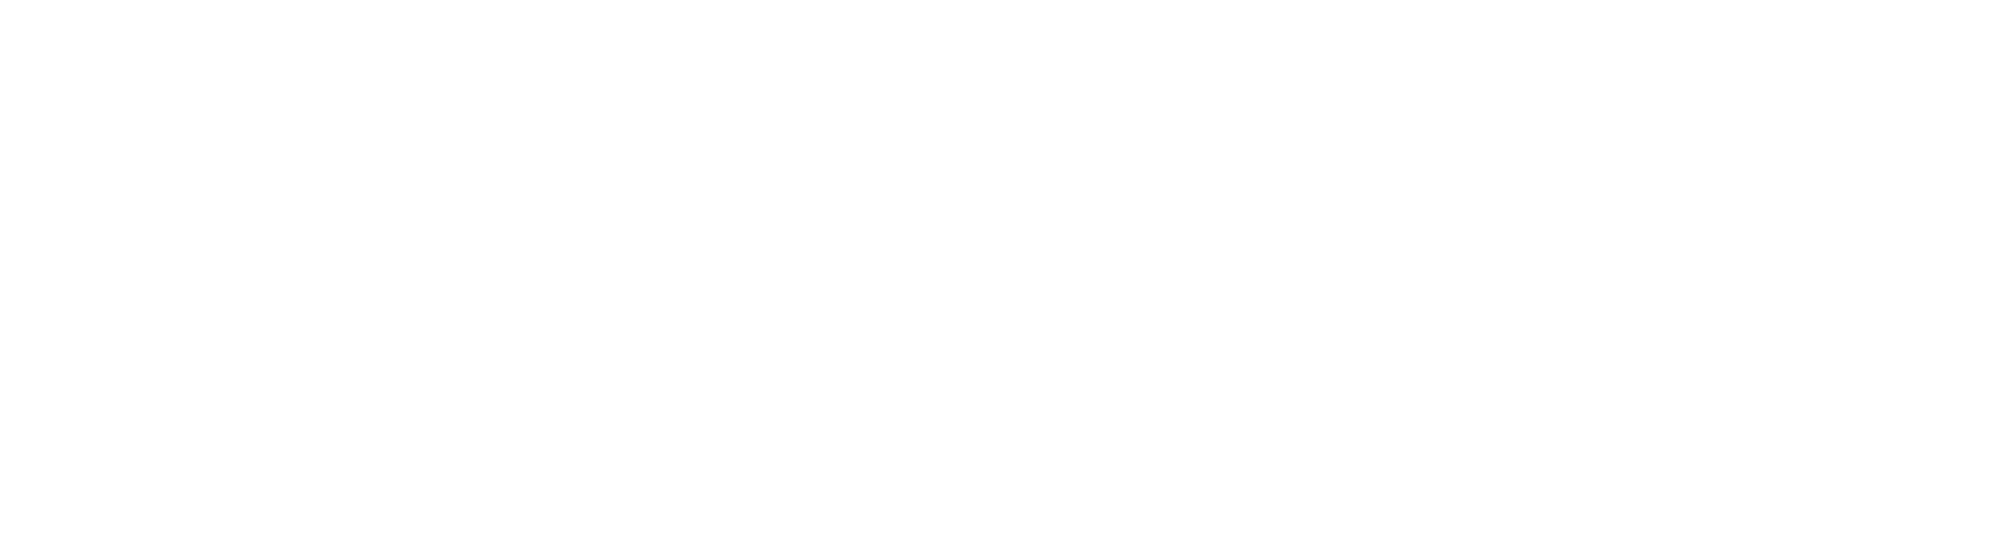 los willows logo white